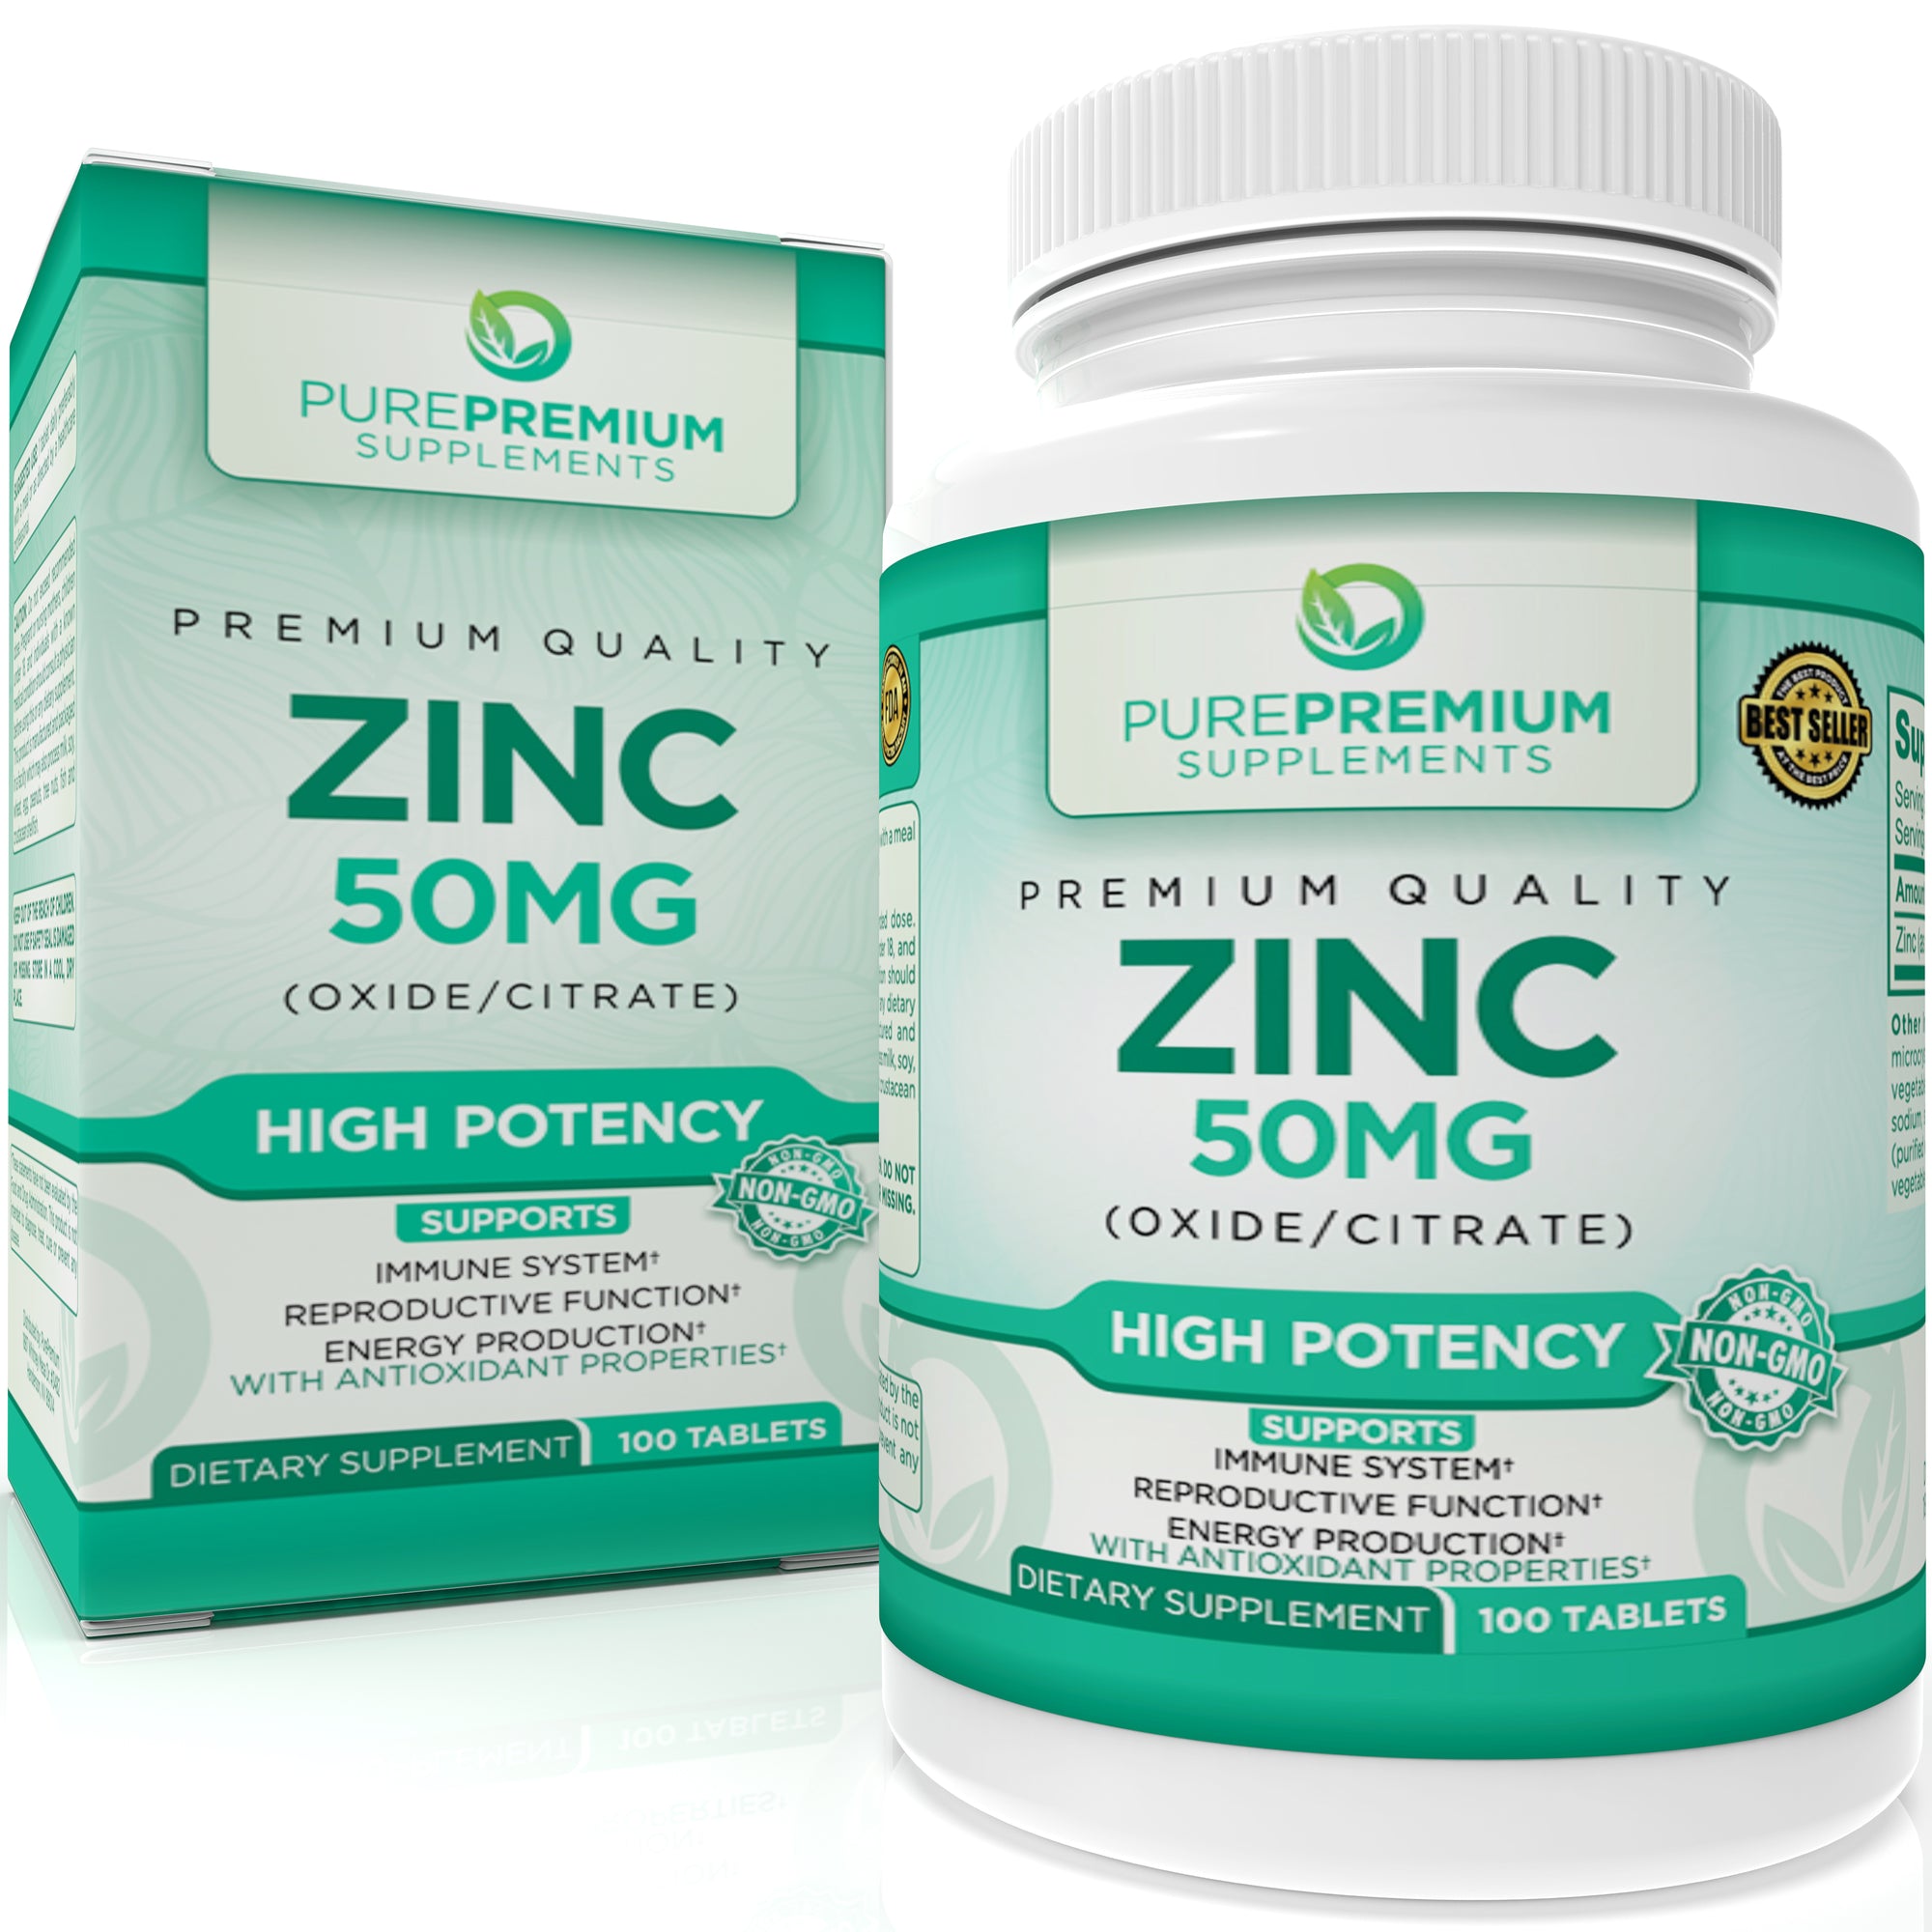 Premium Zinc Oxide/Citrate Supplement